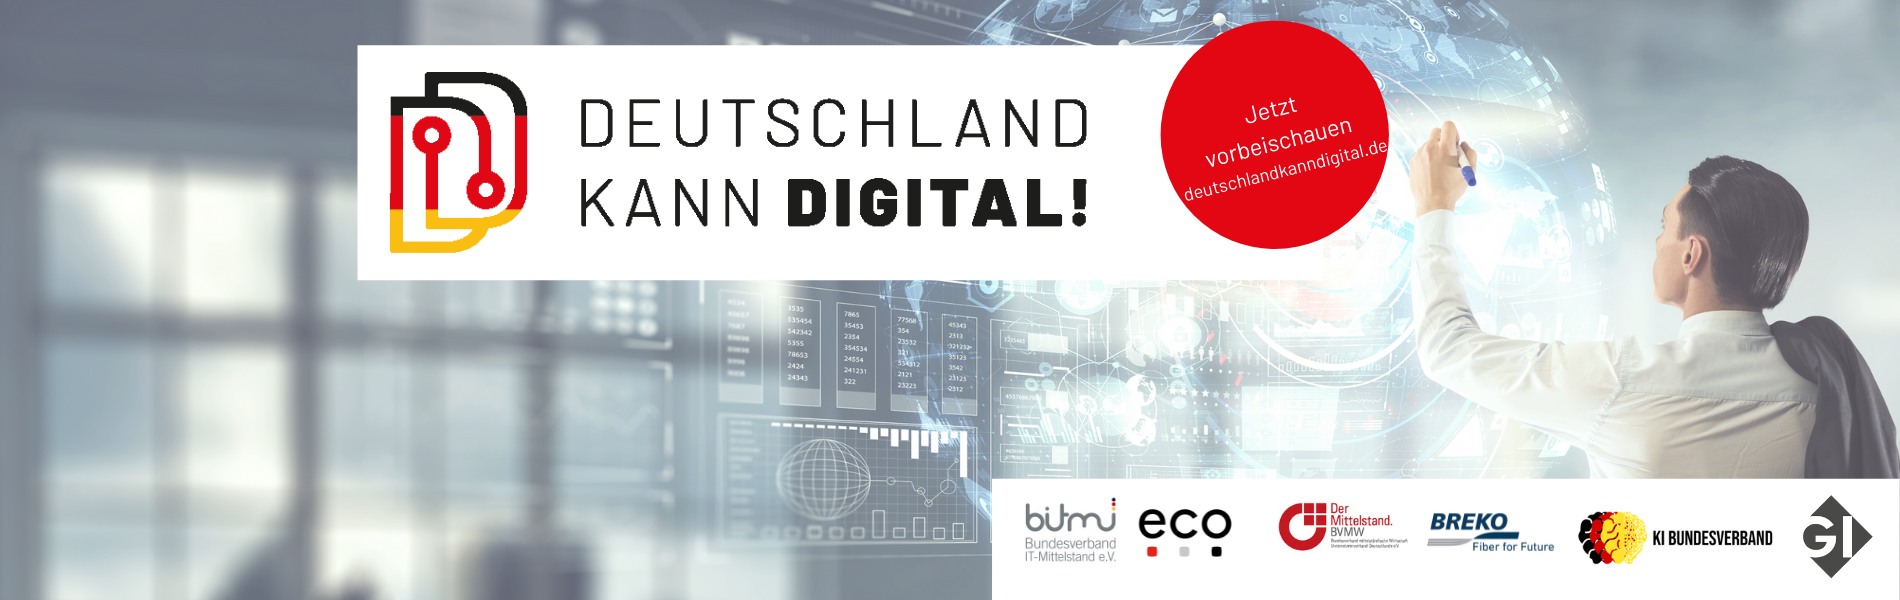 Deutschland kann digital! Folge vier: Digitale Geschäftsmodelle und Schlüsseltechnologien